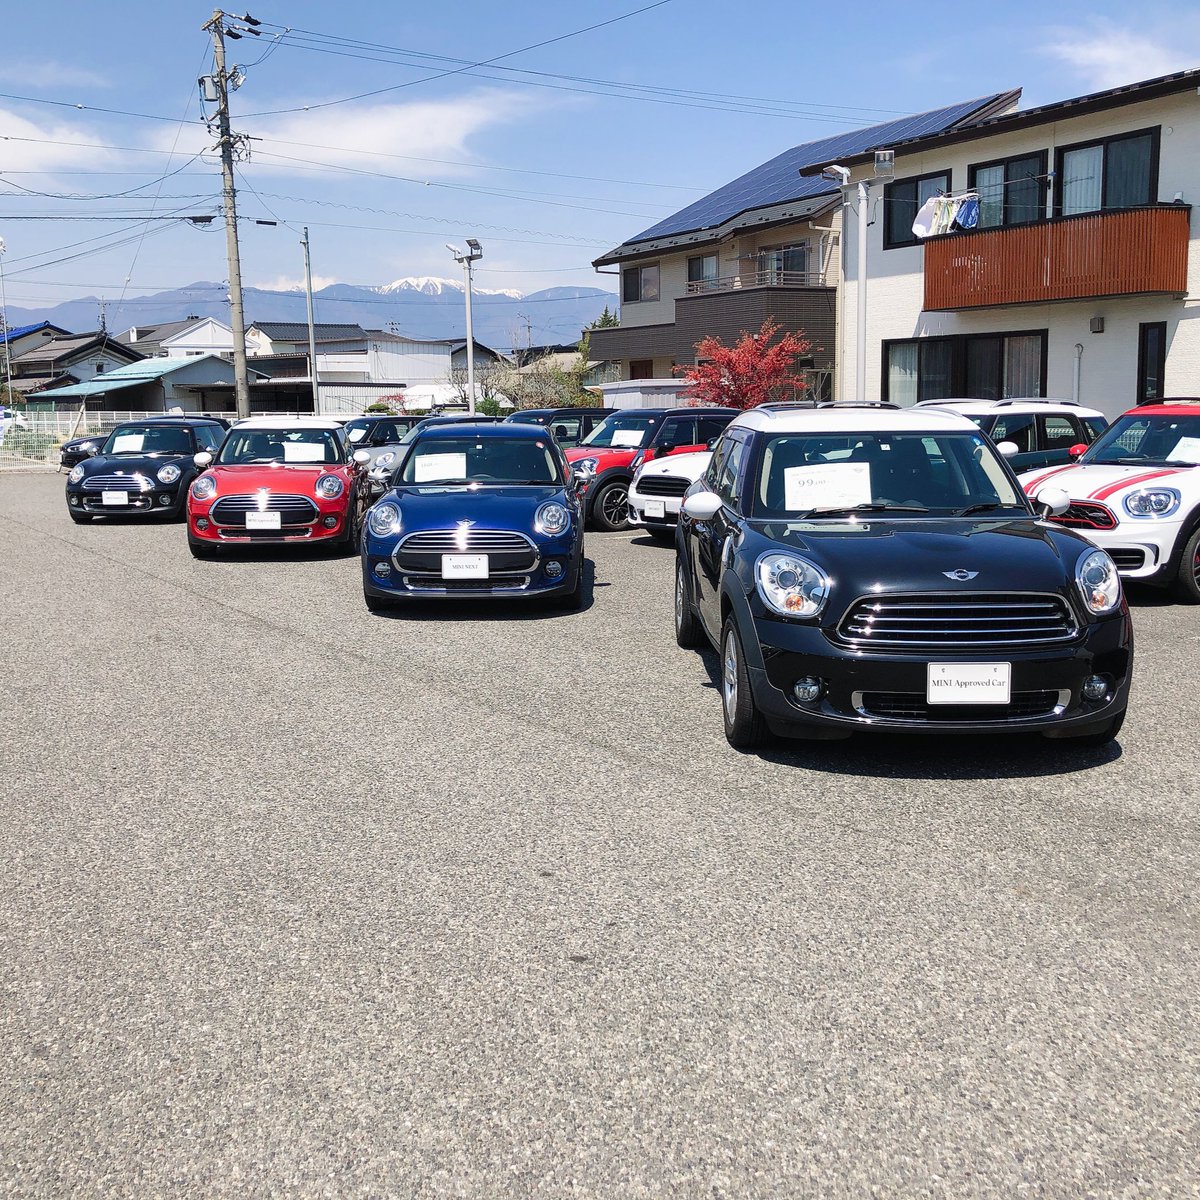 Mini Next 松本 中古車 松本 ミニクーパー 今日から5月 1年前の今日から令和が始まったんですね 感慨深い Miniは今までもこれからも 時代と共に走り続けます Mini Minicooper ミニ ミニクーパー 輸入車 車 車好きと繋がりたい